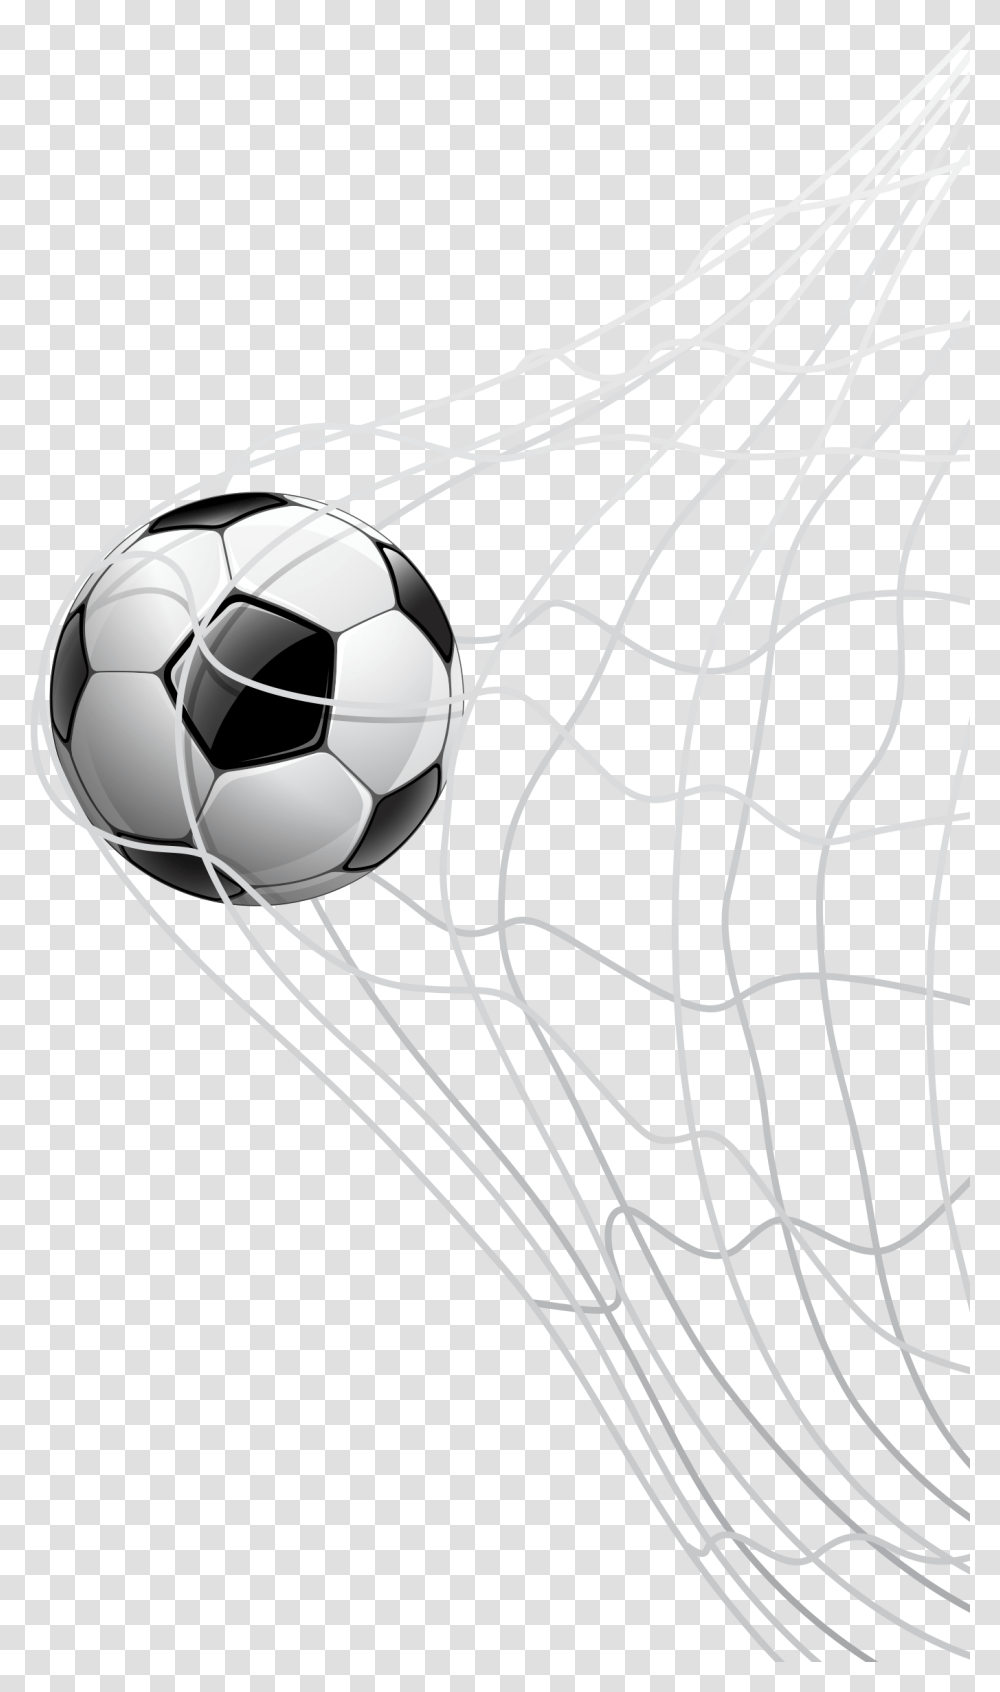 Football Ball Net, Soccer Ball, Team Sport, Sports, Spider Web Transparent Png